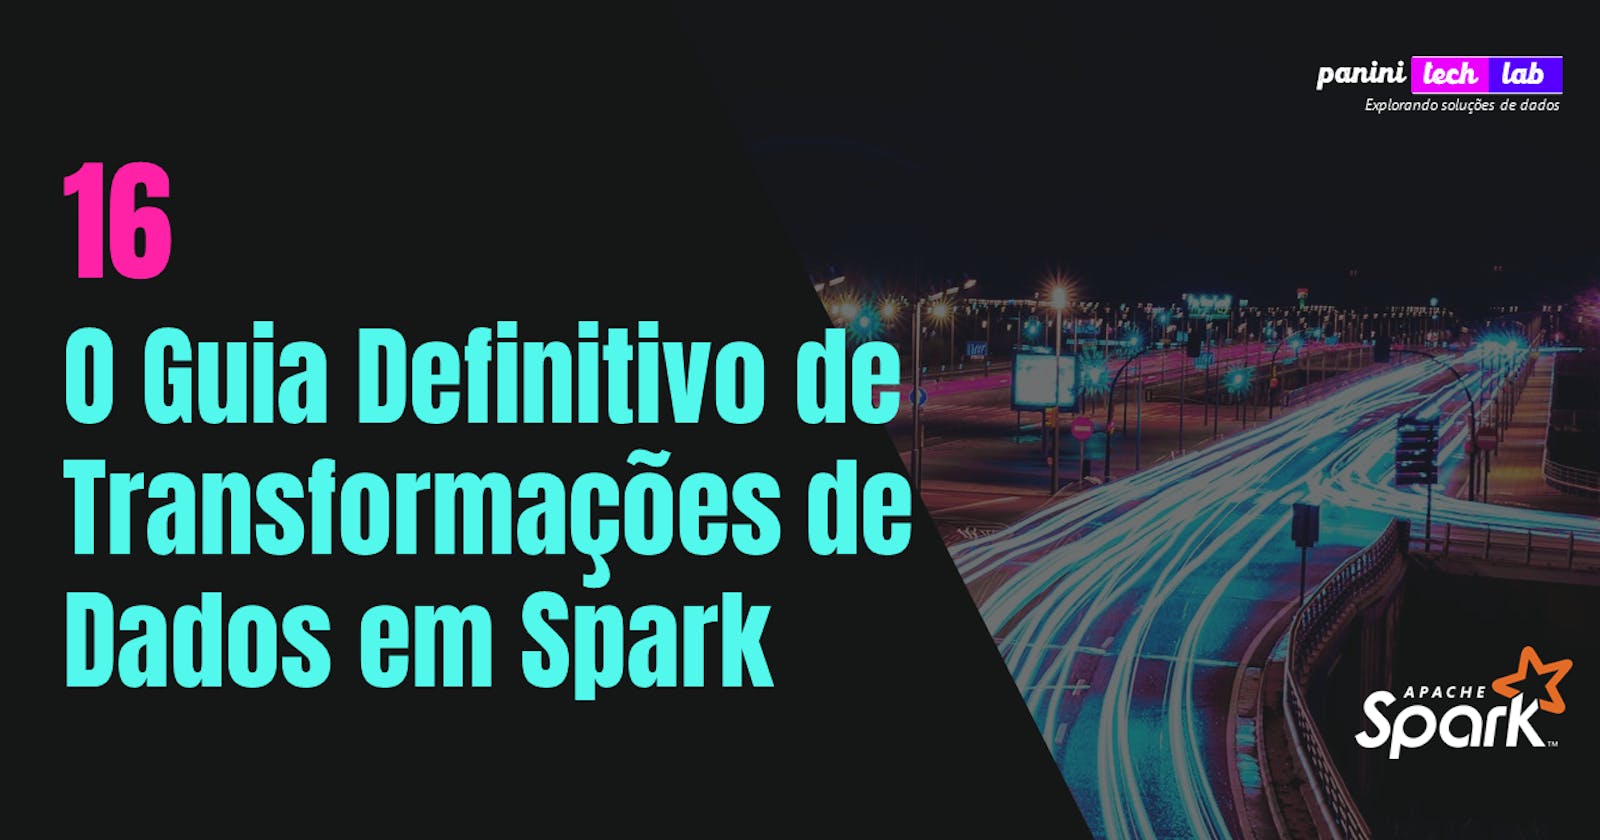 O Guia Definitivo de Transformações em Spark